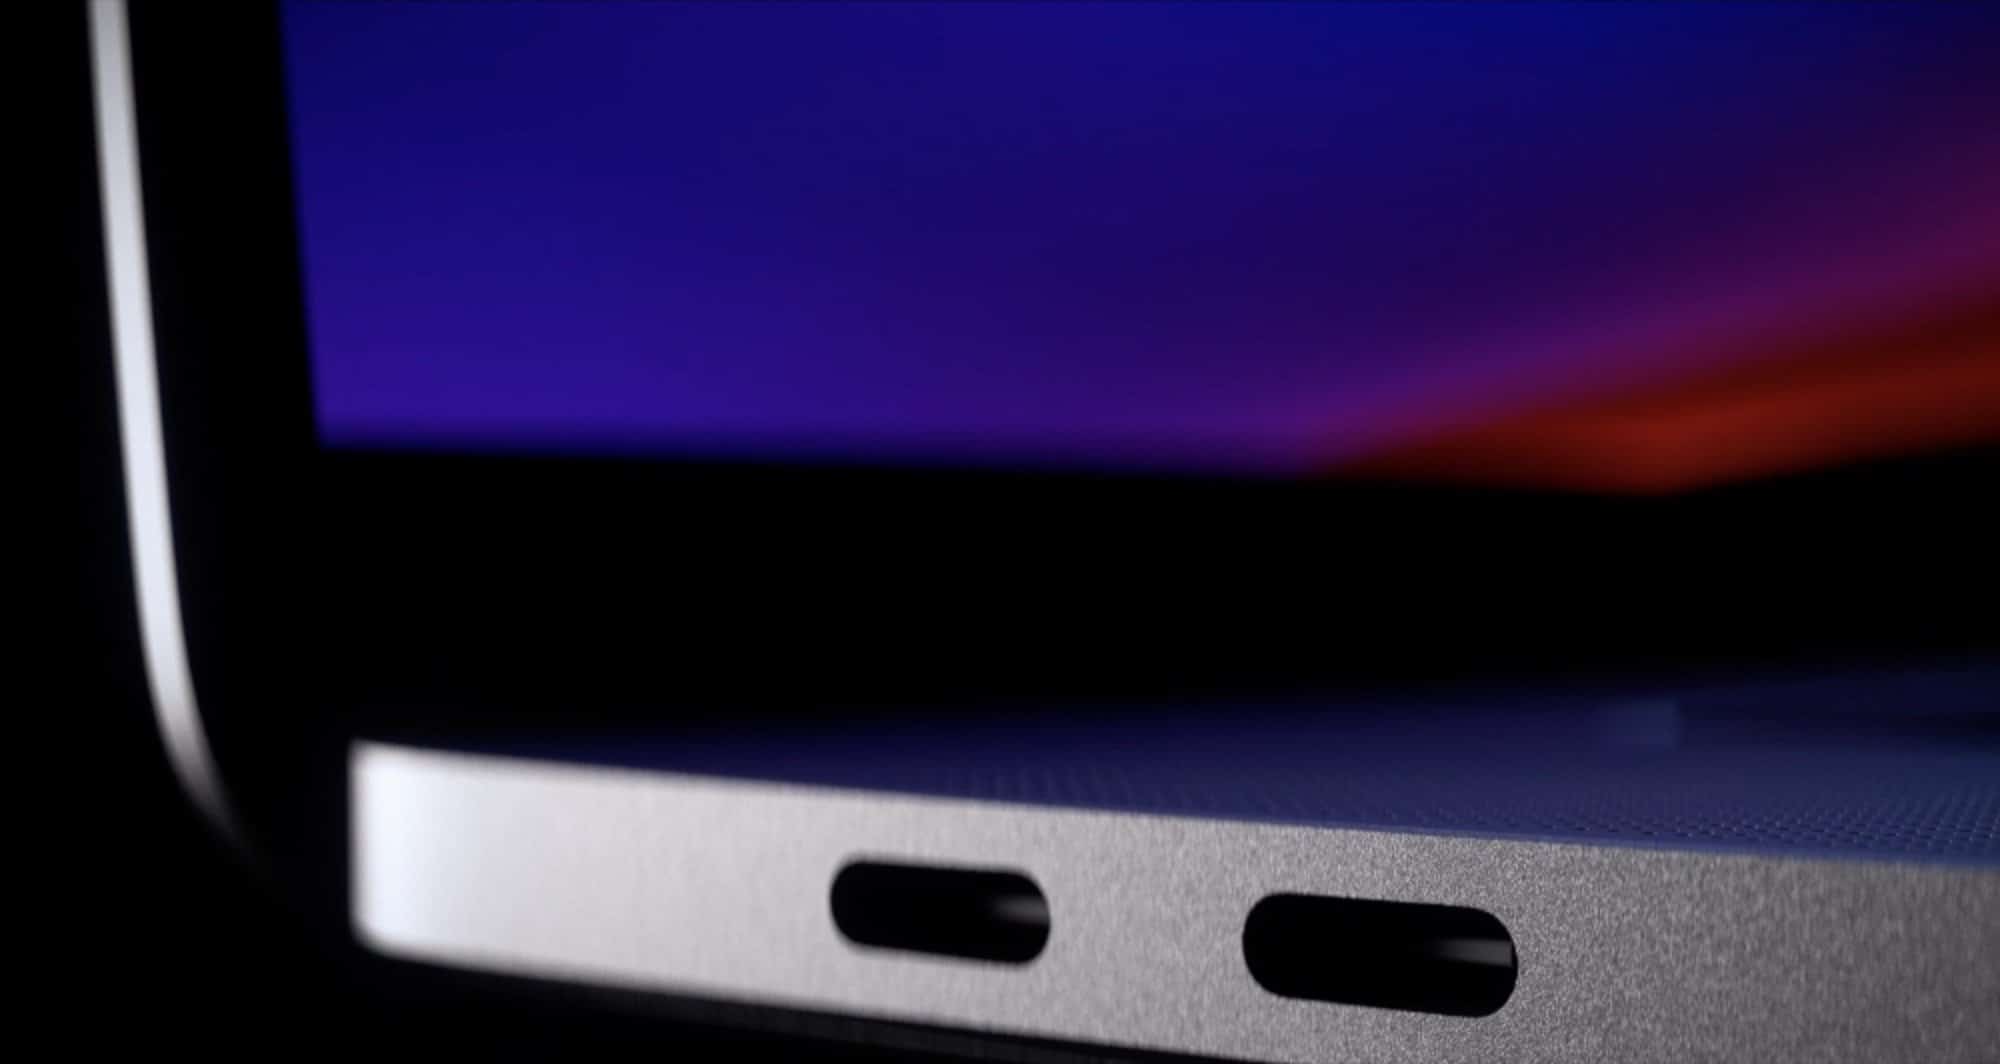 MacBook Pro thế hệ tiếp theo sẽ cải thiện màn hình, sạc qua MagSafe nhanh hơn